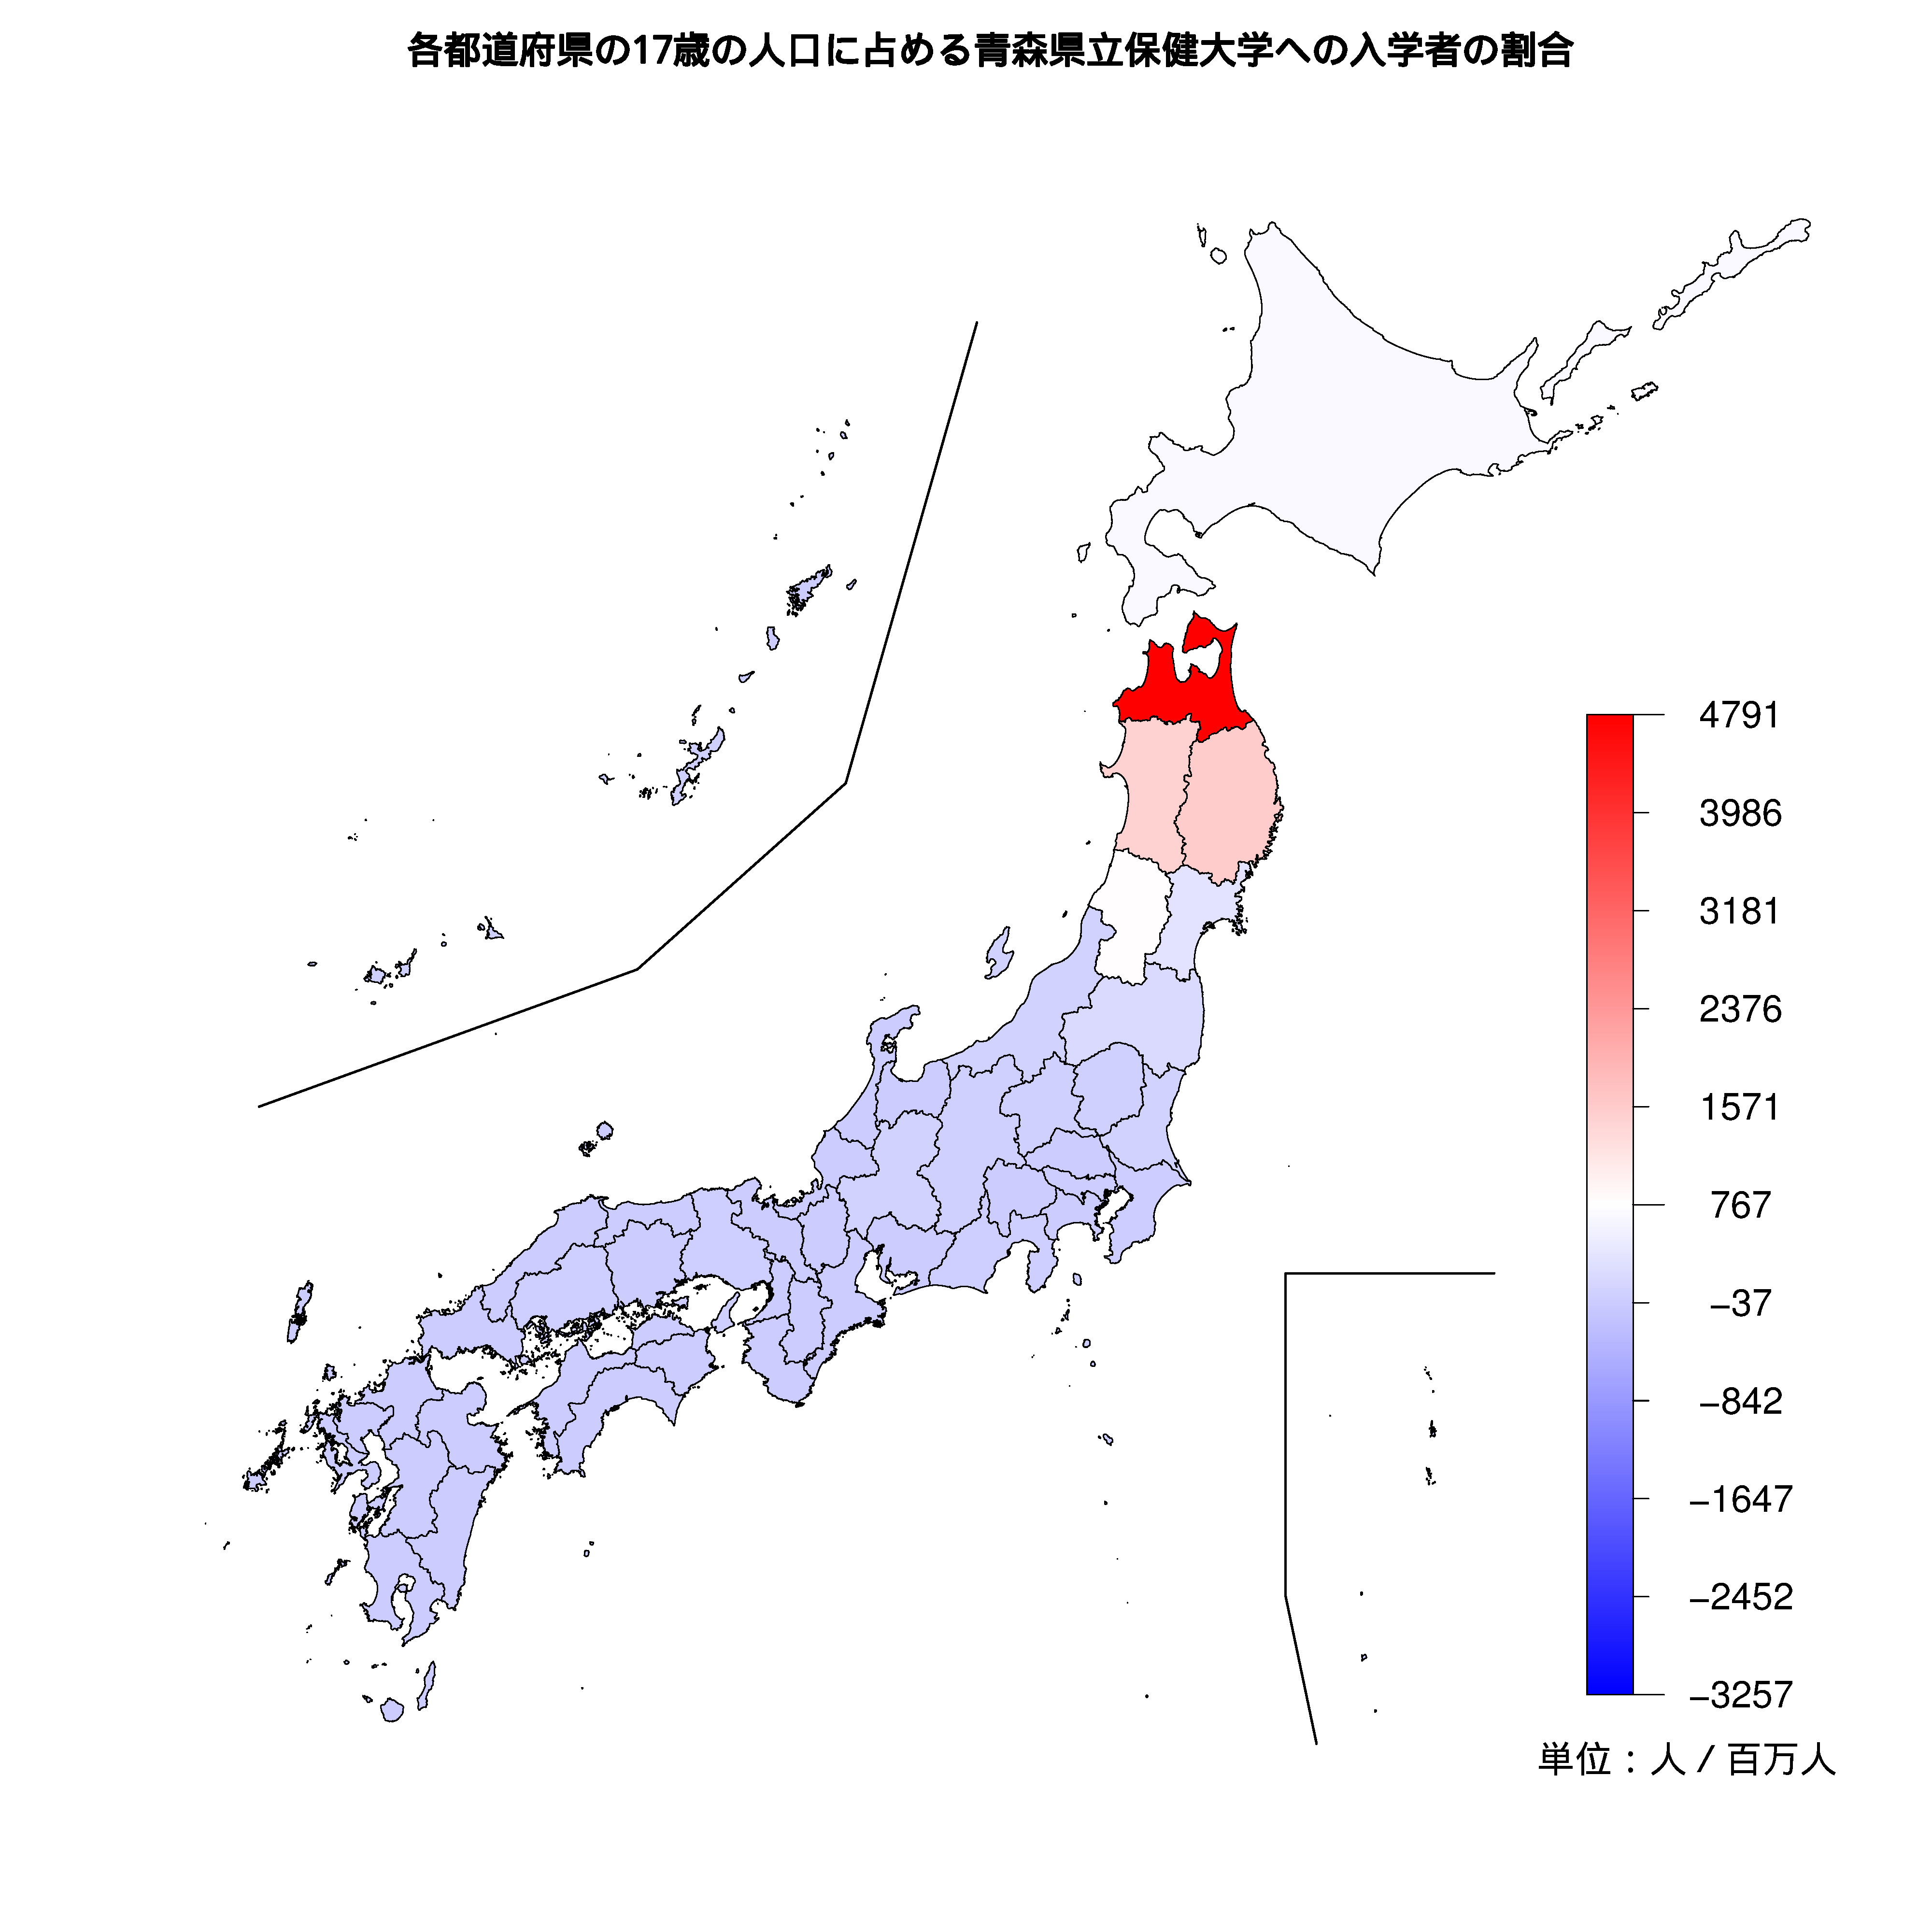 青森県立保健大学への入学者が多い都道府県の色分け地図